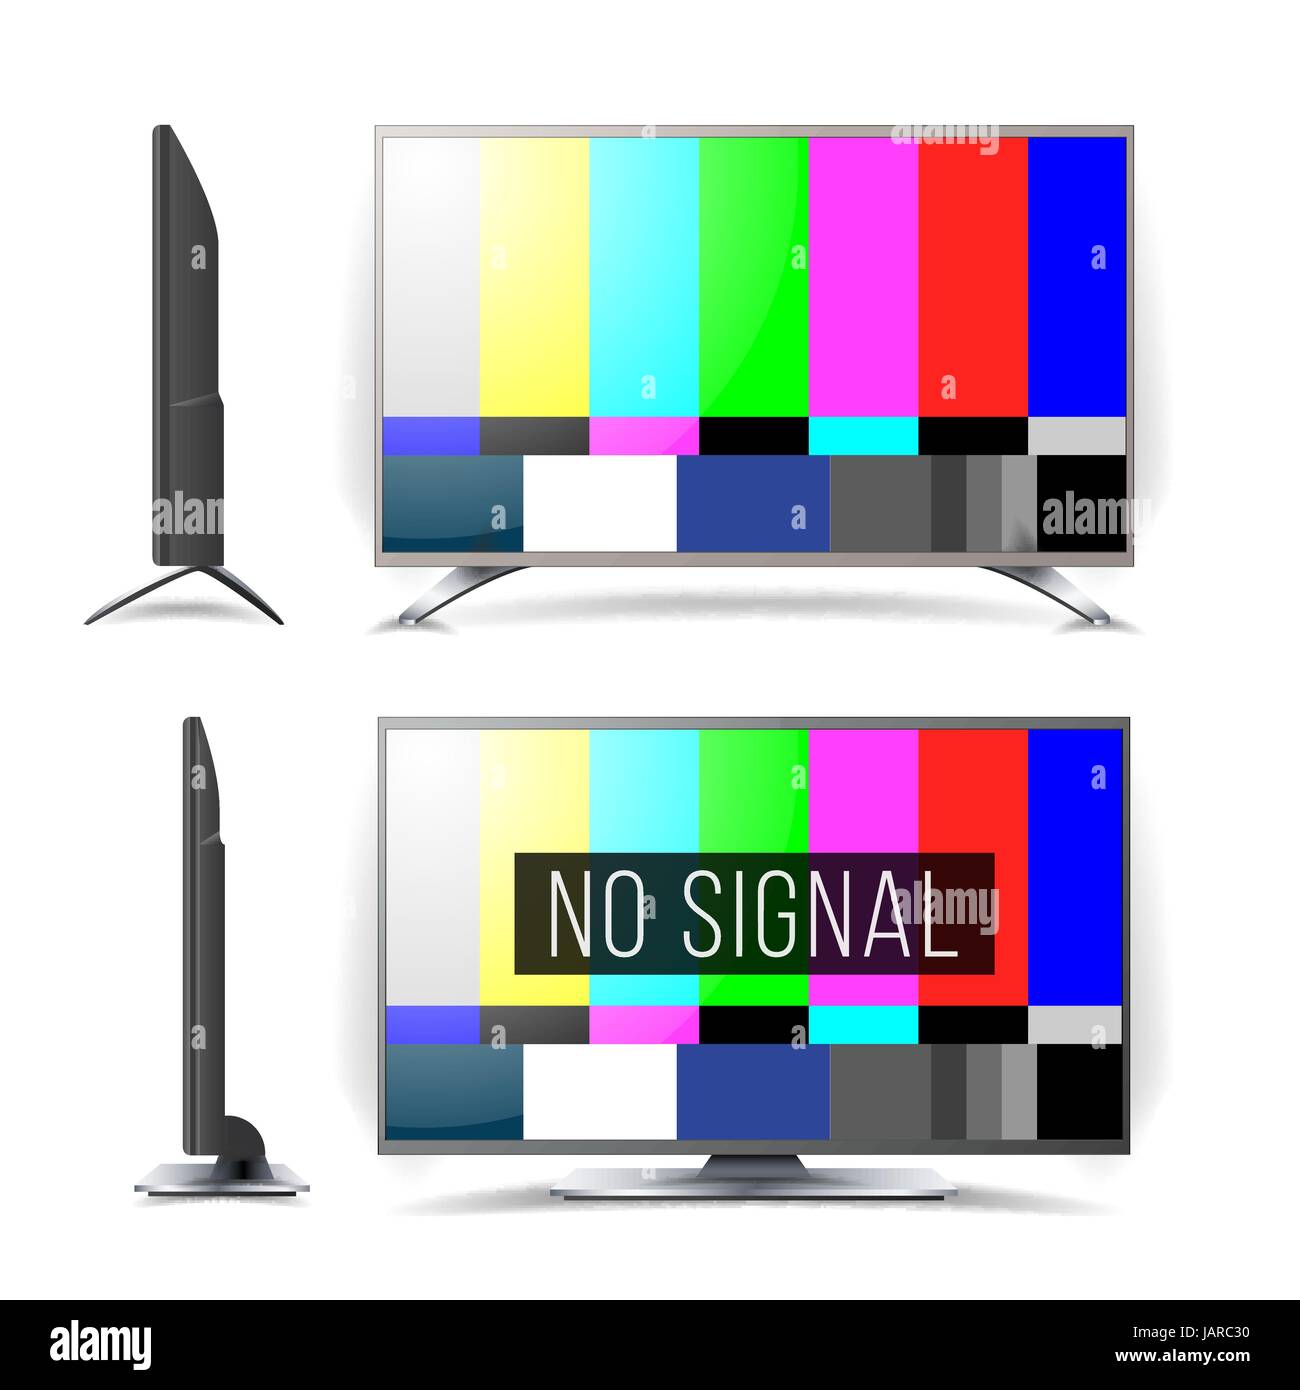 Kein Signal TV Testbild Vektor. LCD-Monitor. Flachbild-TV. Fernsehen farbige Balken Signal. Analog und NTSC standard-TV-Bildschirm zu testen. Wartung-co Stock Vektor